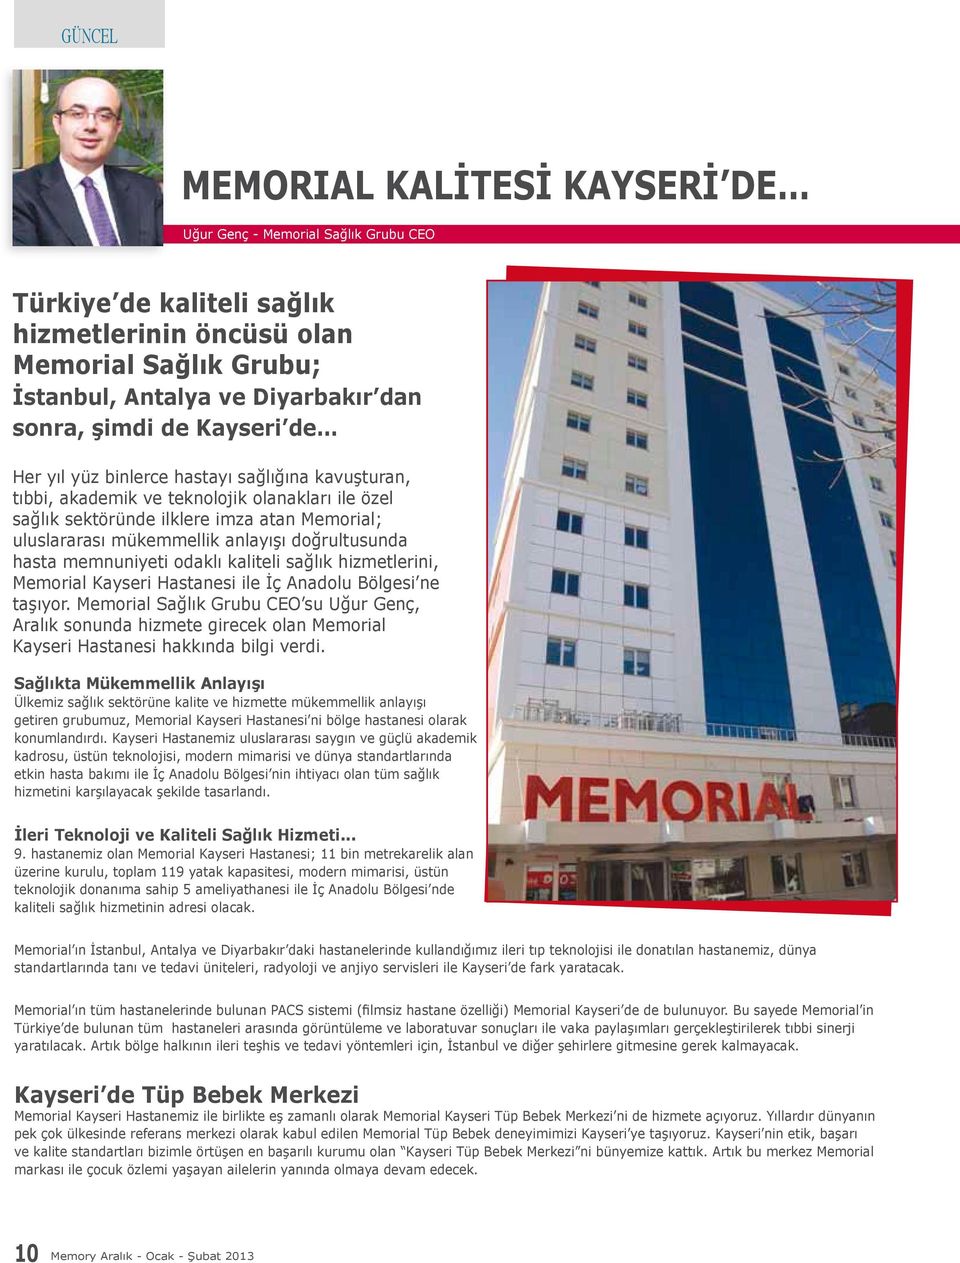 doğrultusunda hasta memnuniyeti odaklı kaliteli sağlık hizmetlerini, Memorial Kayseri Hastanesi ile İç Anadolu Bölgesi ne taşıyor.